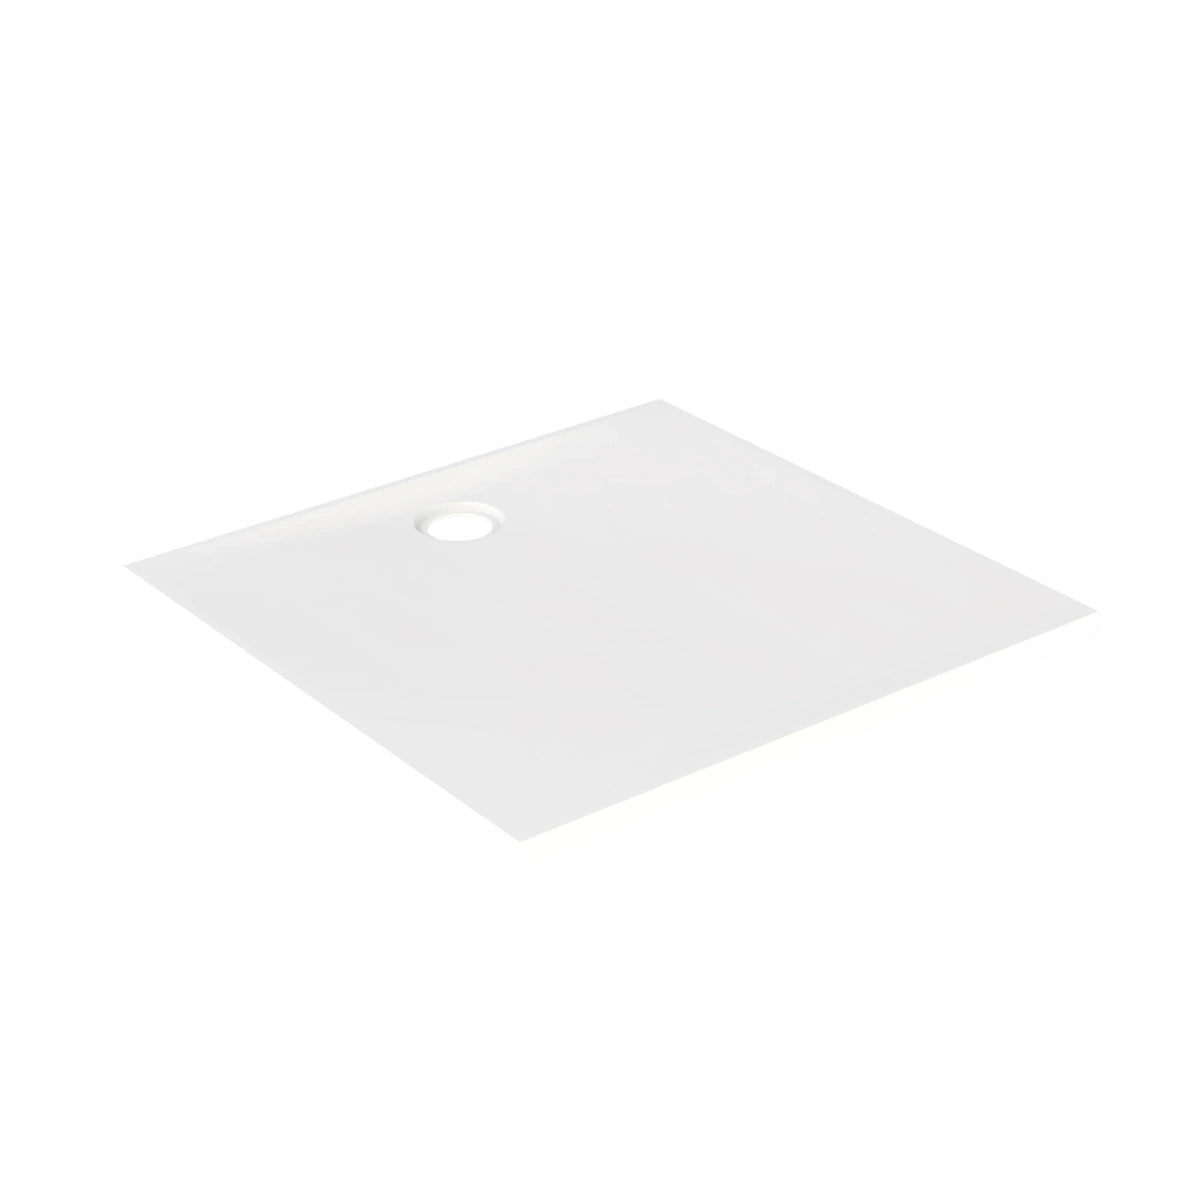 Plato de ducha Newforce 2.0 - 90cm x 90cm - blanco brillo